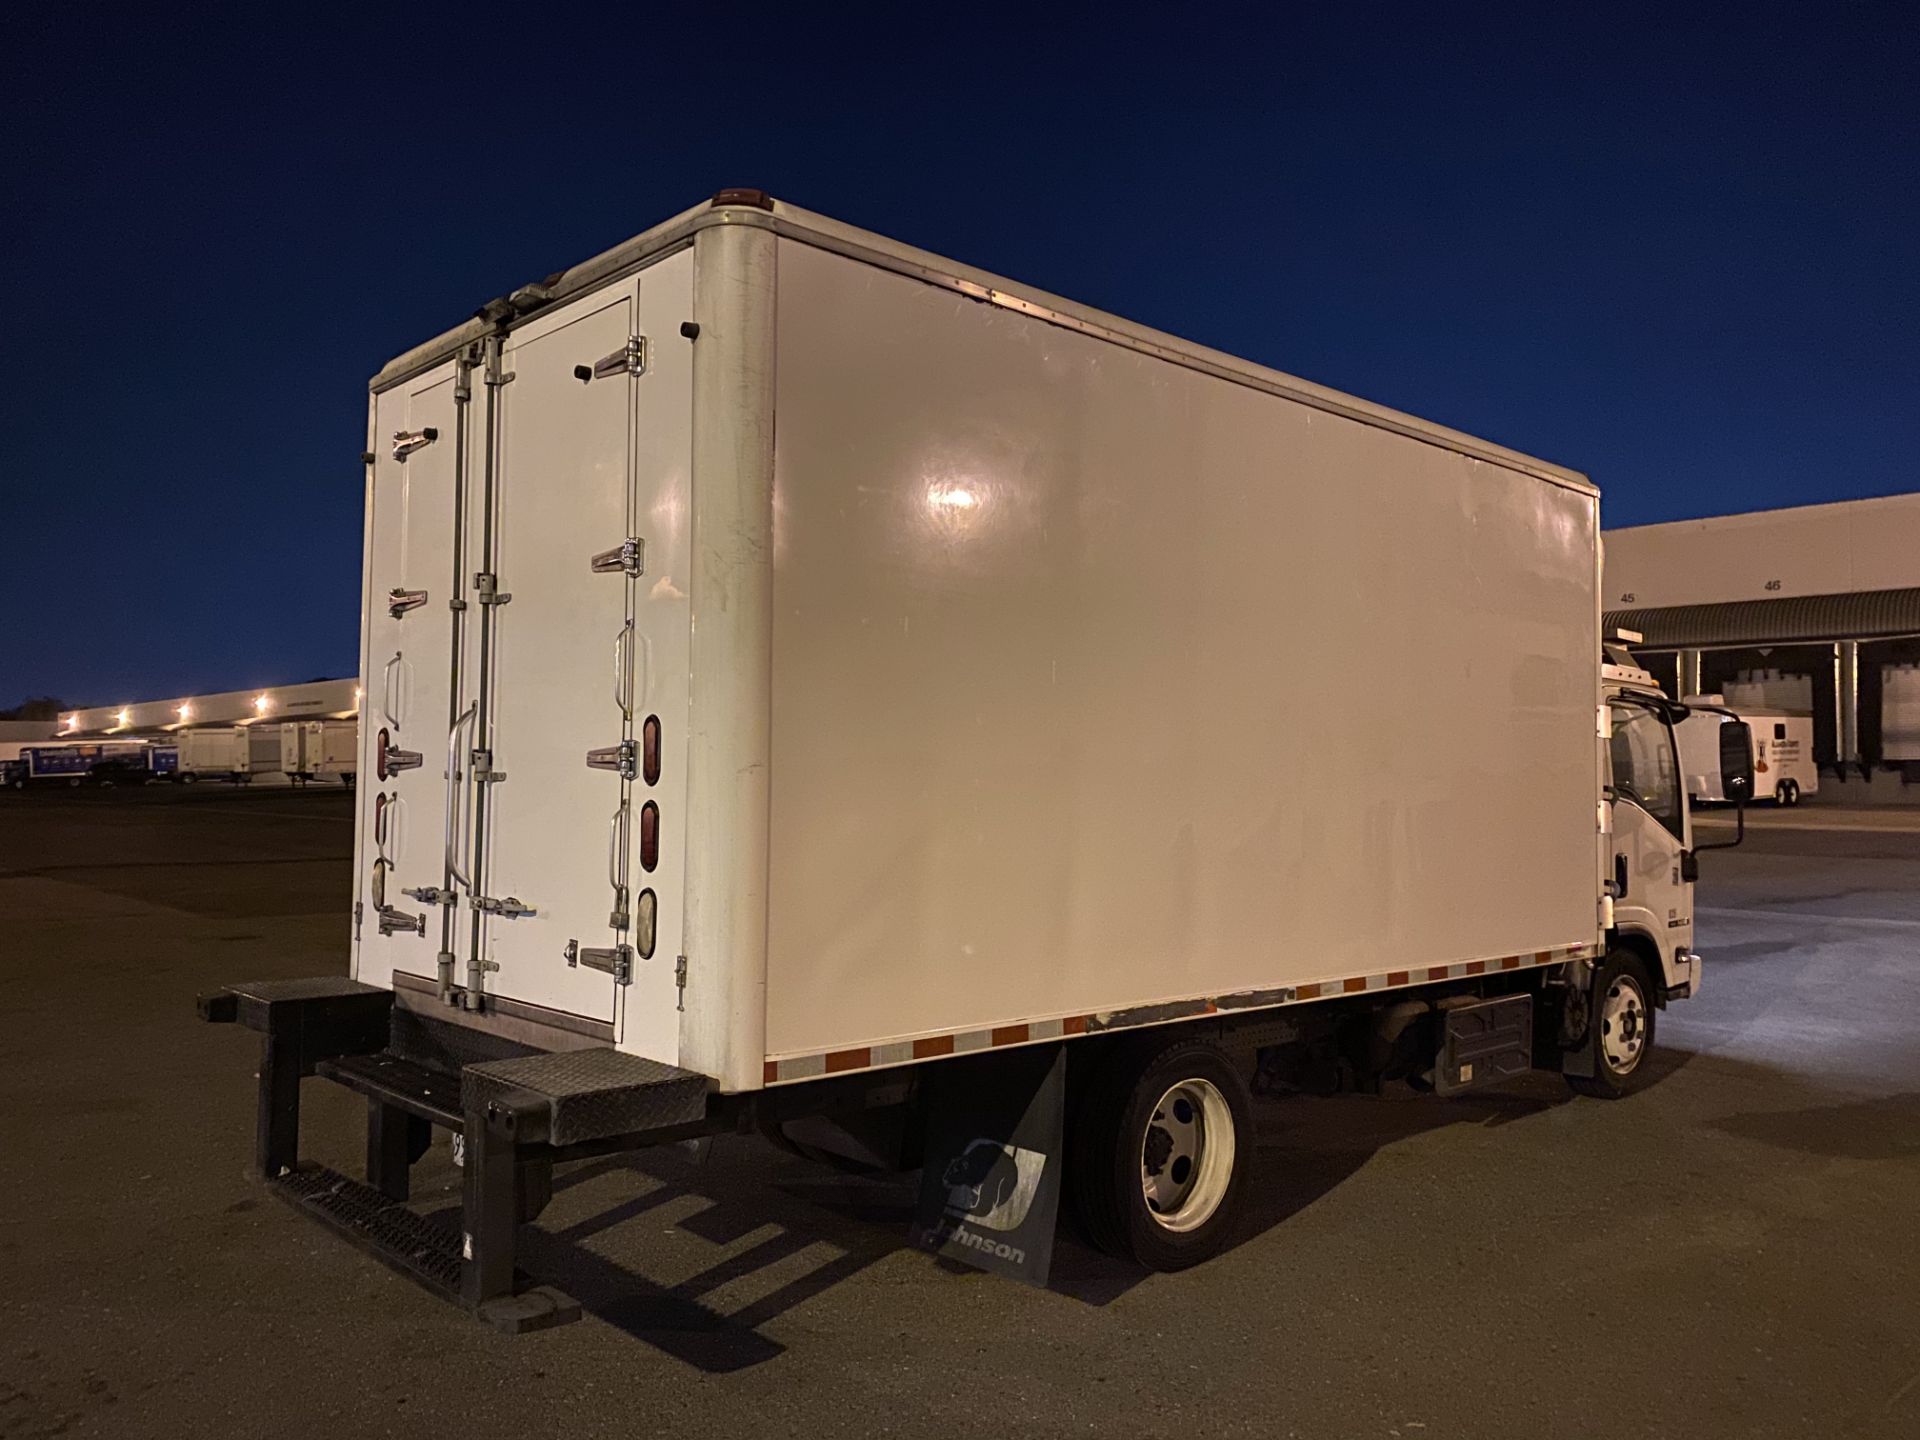 2013 Isuzu refrigerated truck - Image 3 of 9